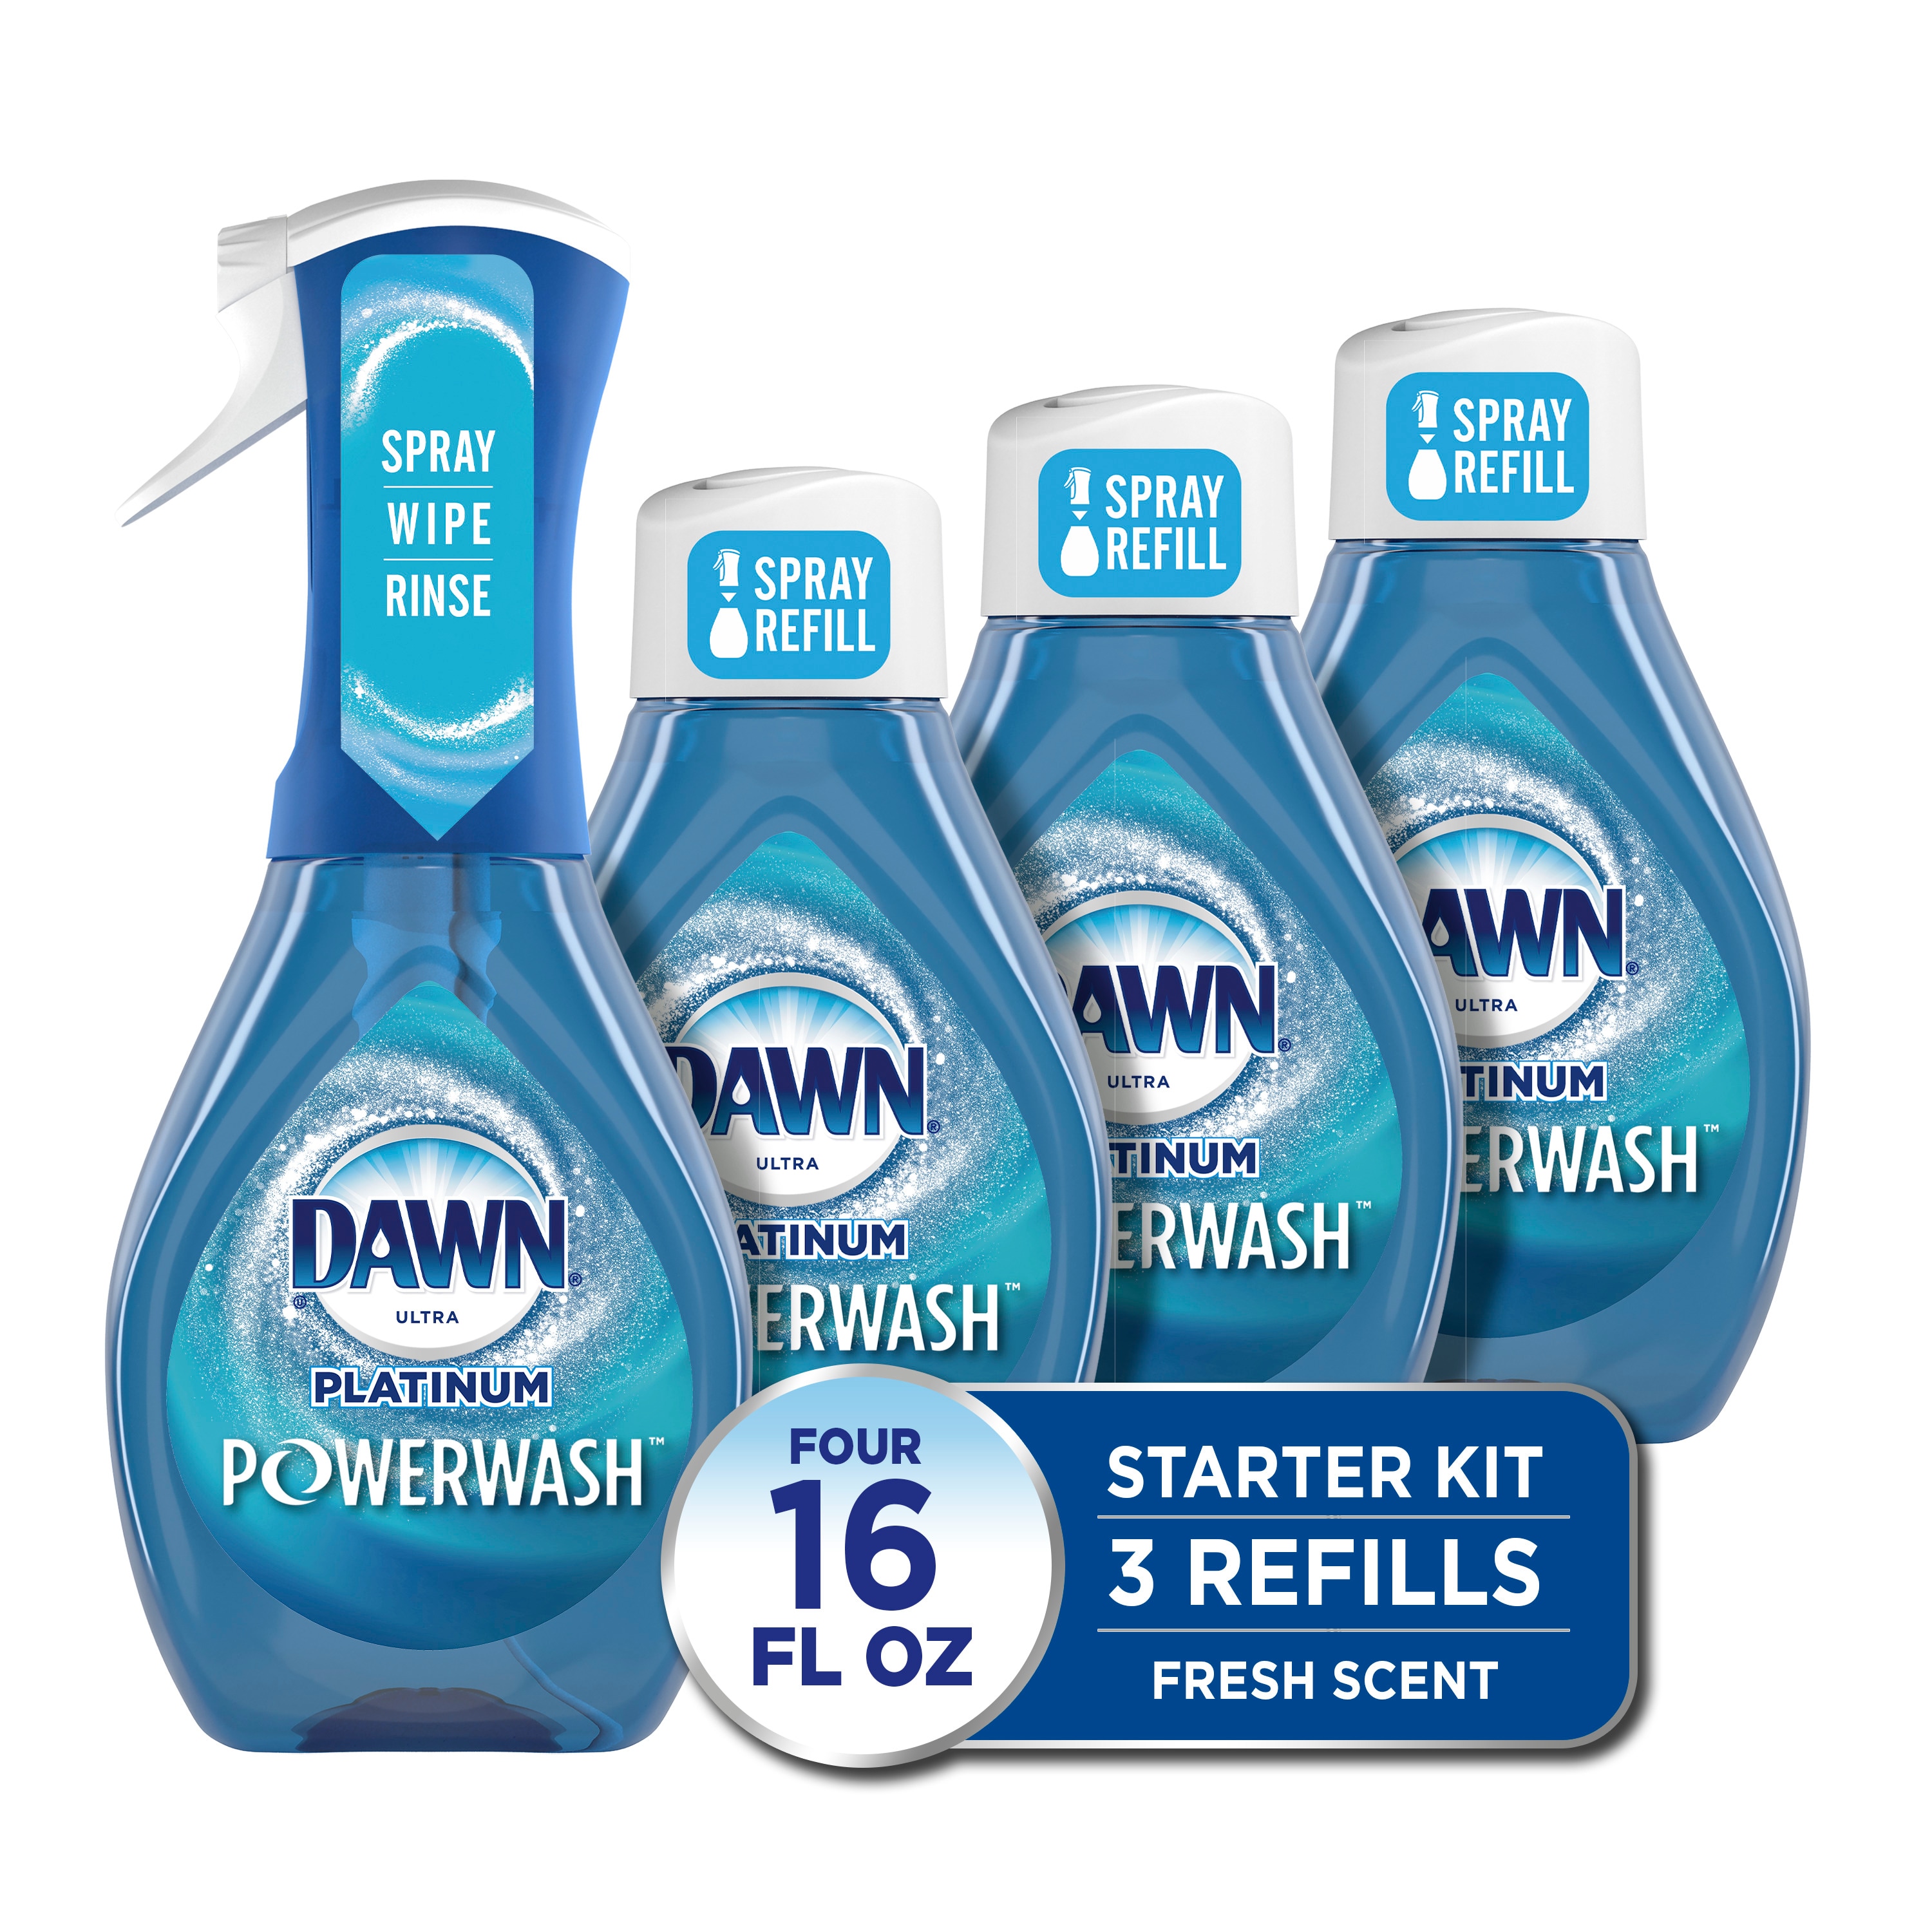 Dawn Spray Dish Soap, 16 Fluid Ounce, 1 Spray and 2 Refills 